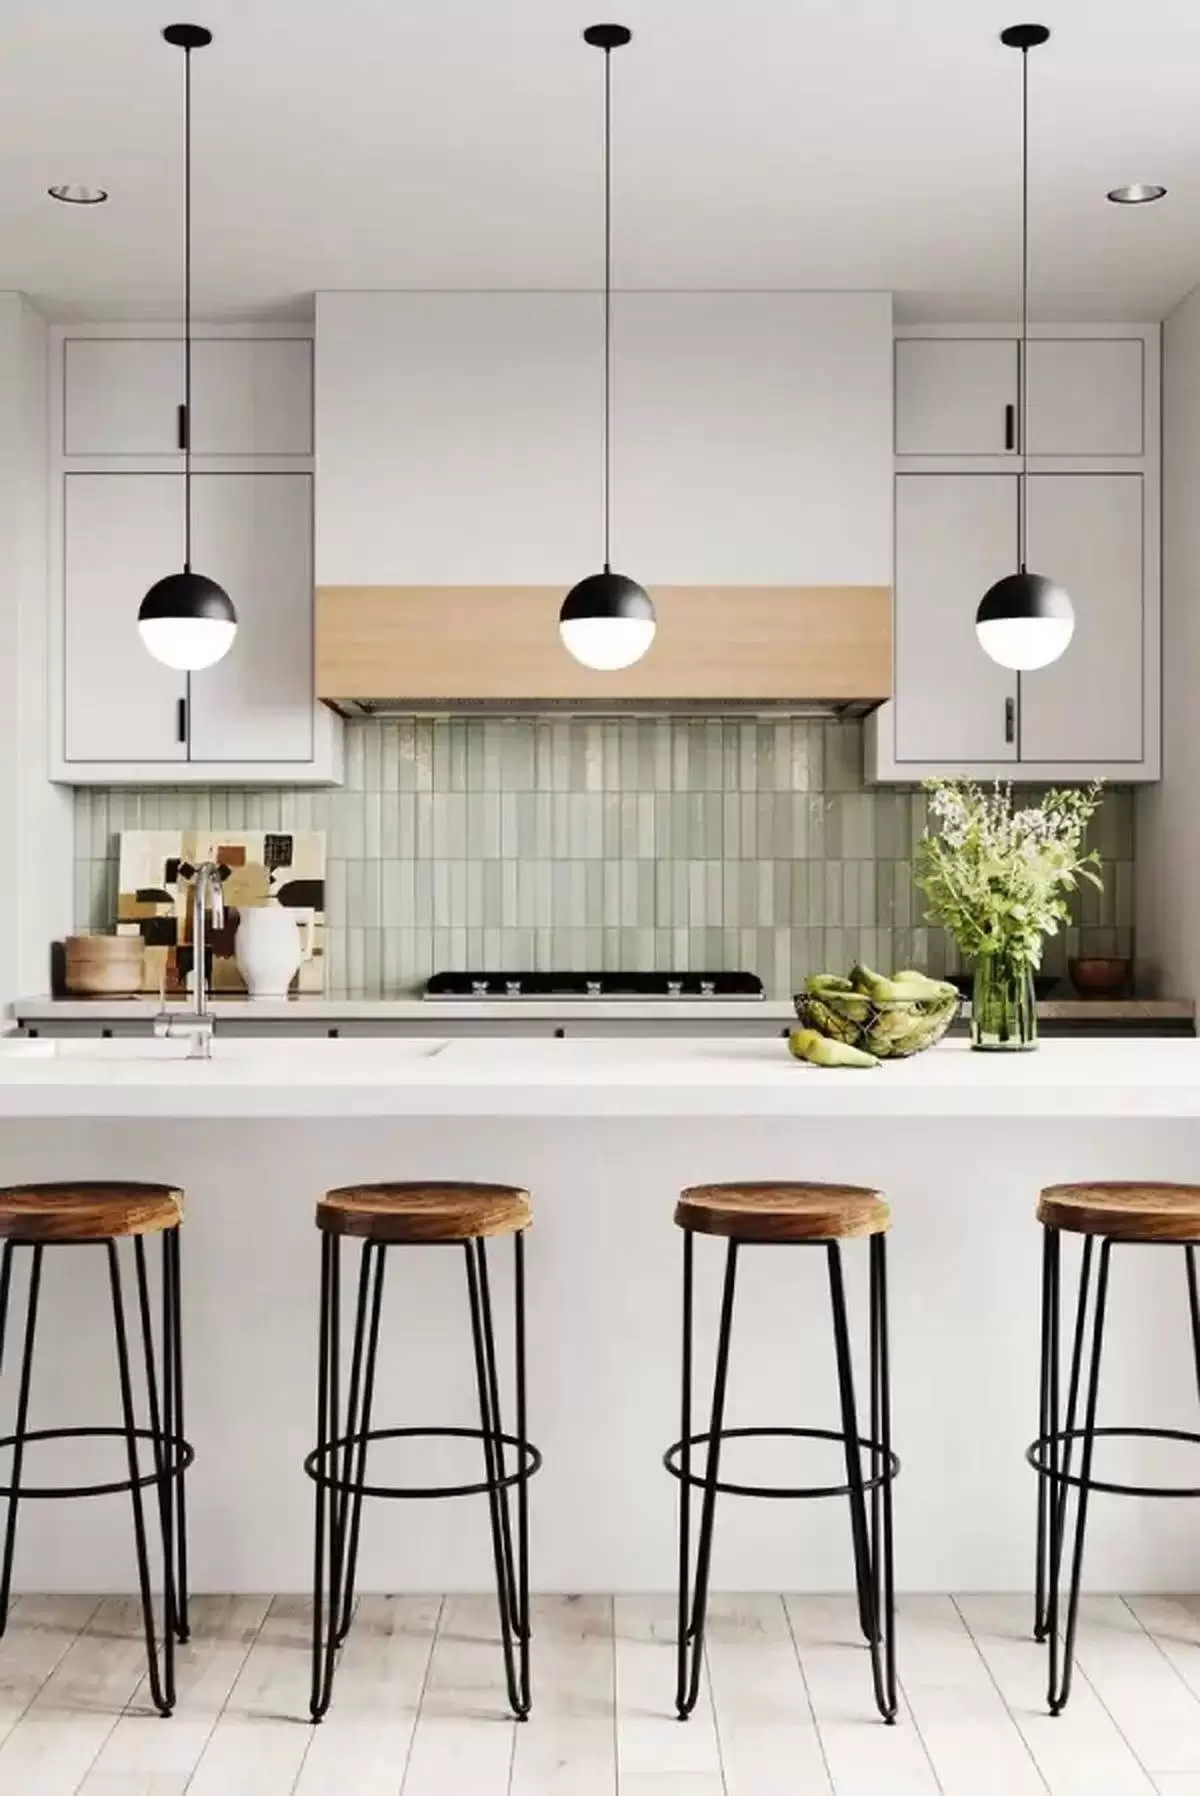 آشپزخانه های مدرن و جدید -  خانوم شما لایق داشتن یه همچین فضایی تا نشون بدی کدبانو کیه 